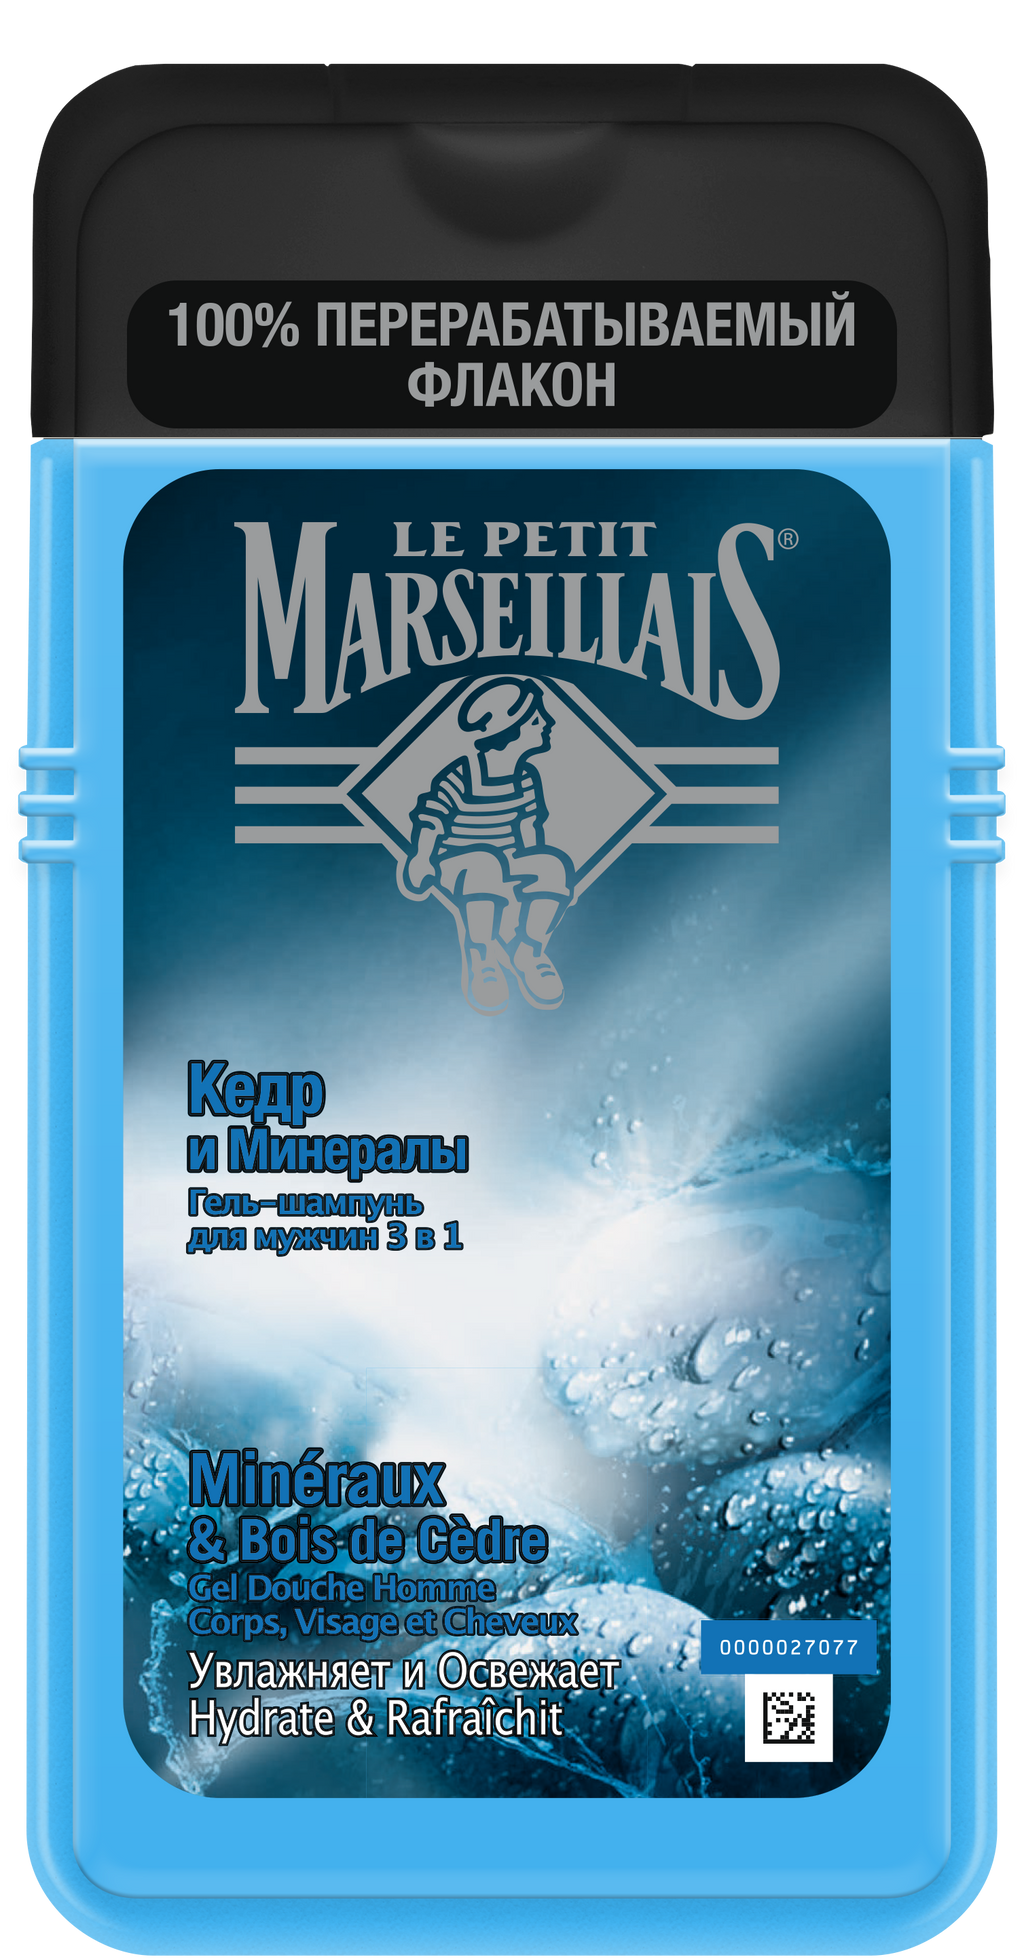 фото упаковки Le Petit Marseillais Гель-Шампунь Кедр и минералы 3в1